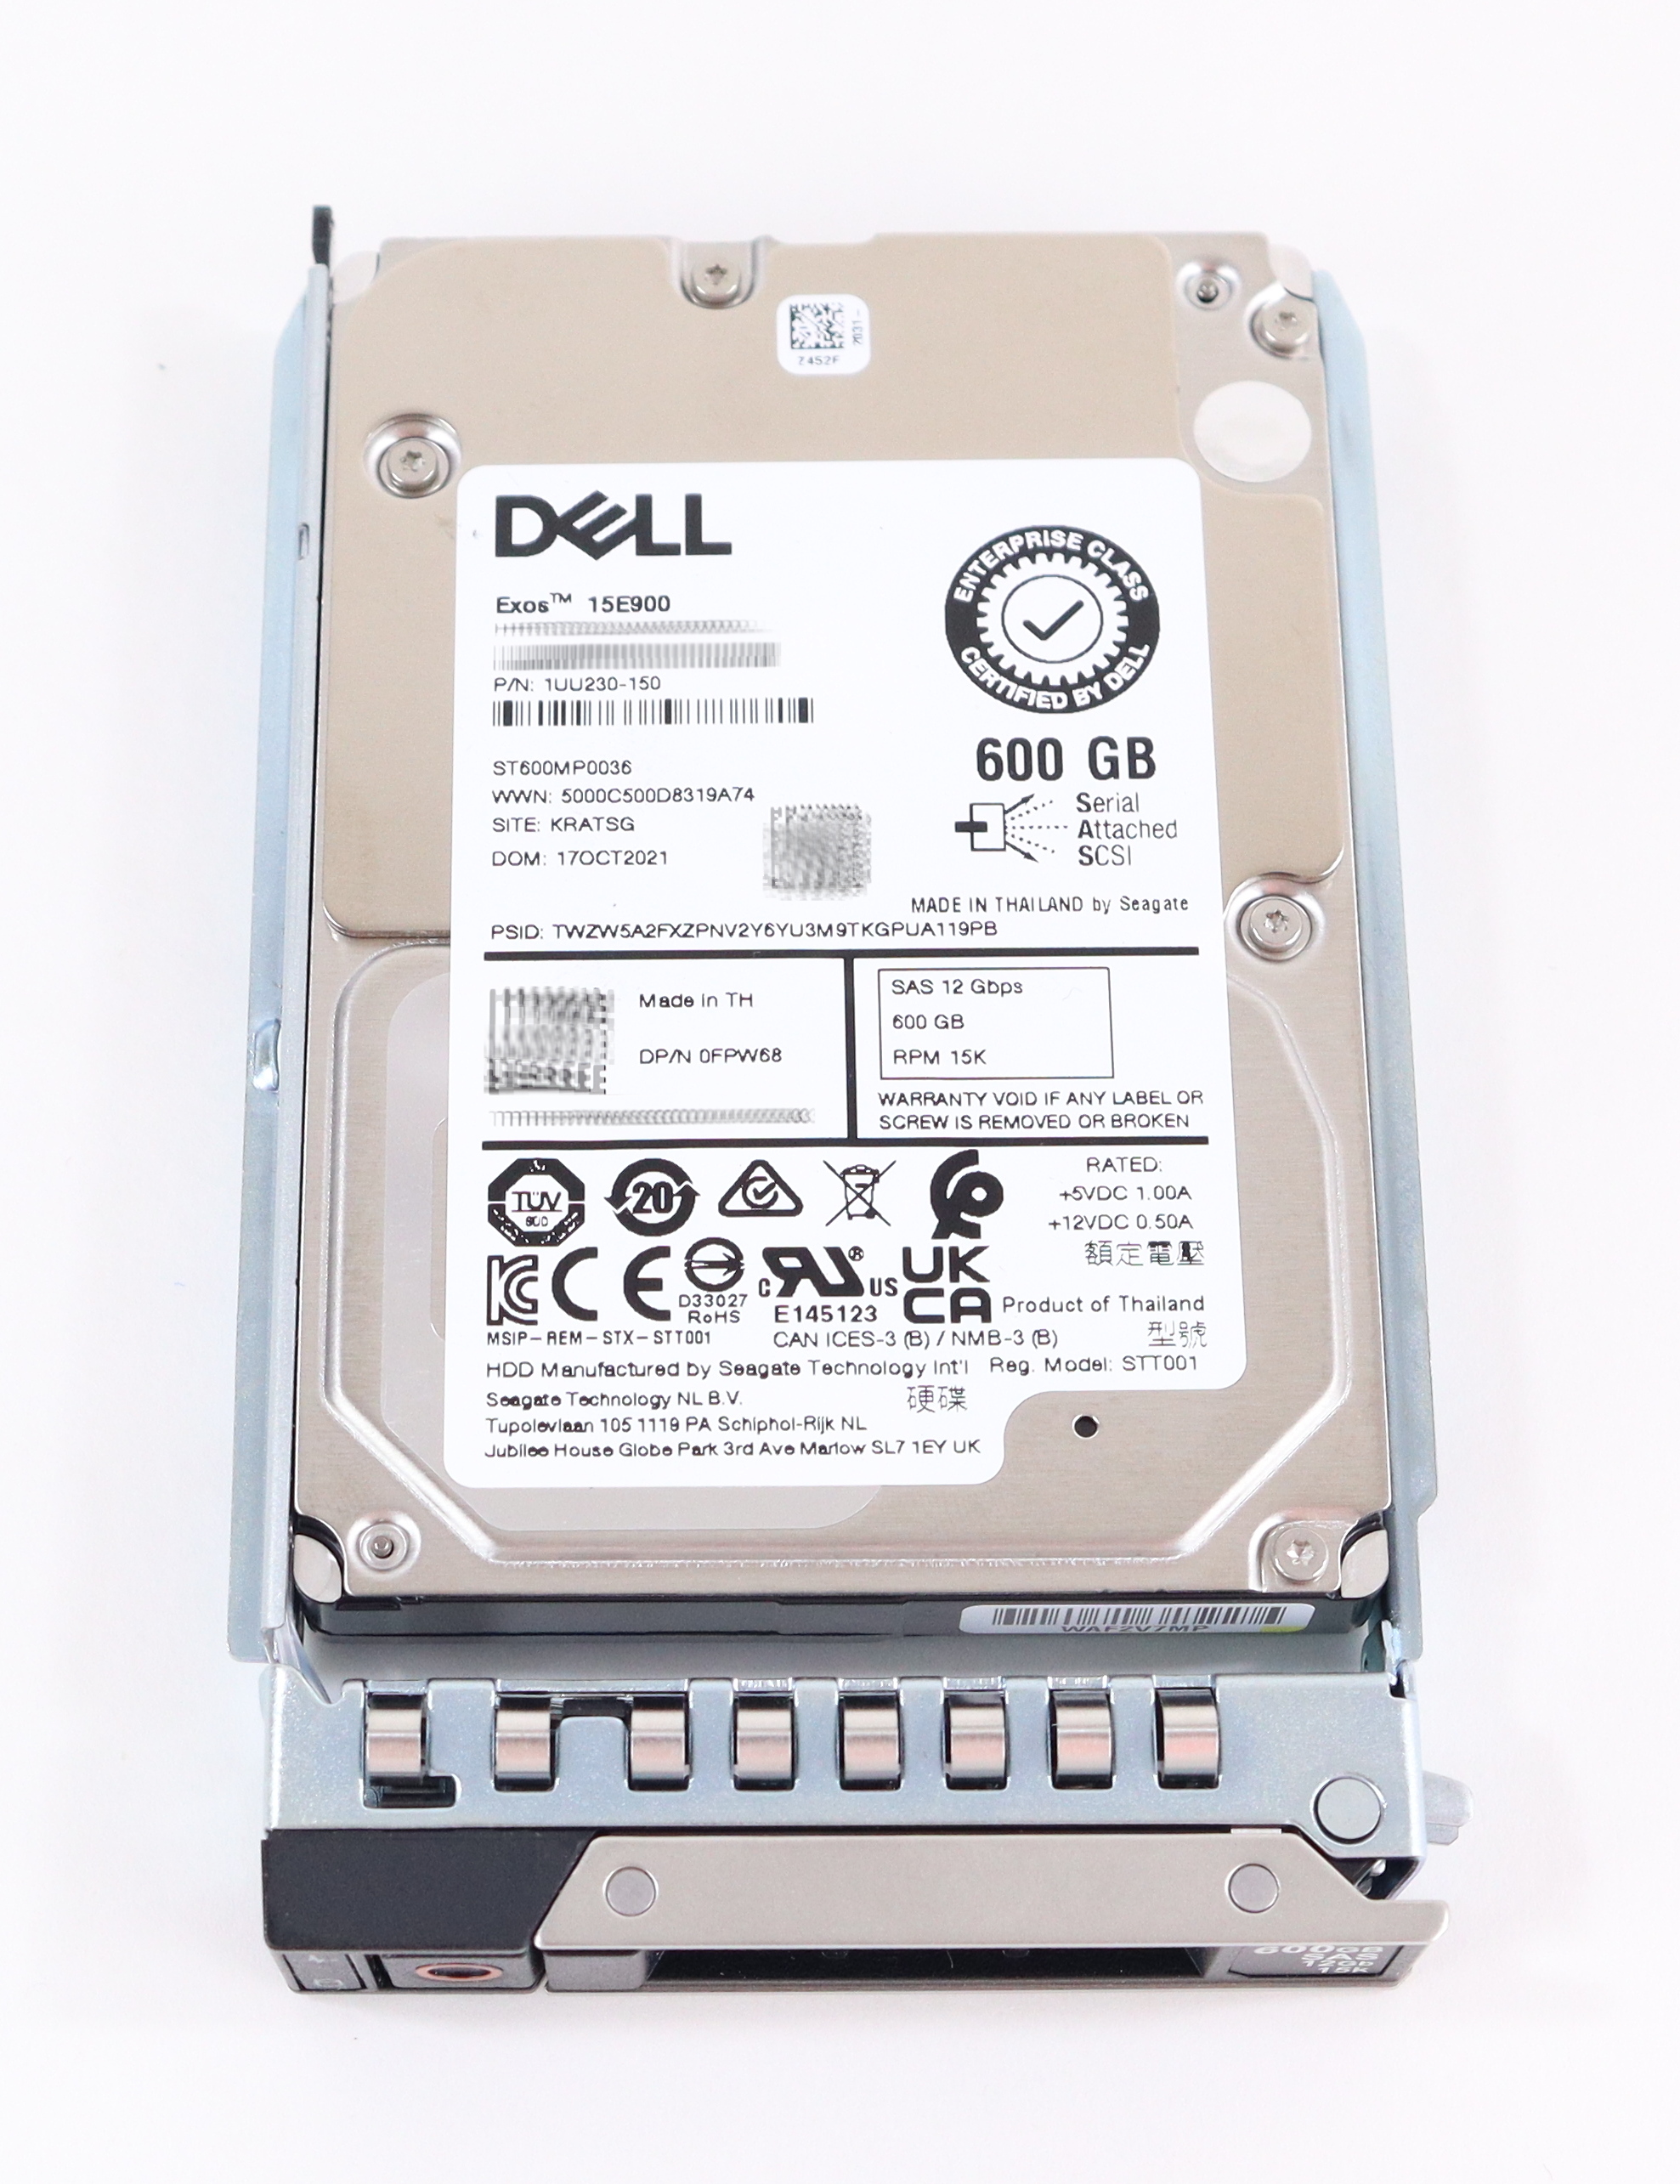 Dell Seagate 600Gb Exos 15E900 ST600MP0036 15K Rpm SAS 12Gb/s 2.5" PN: 1UU230-150 Mpn: 400-ATIN PN: FPW68